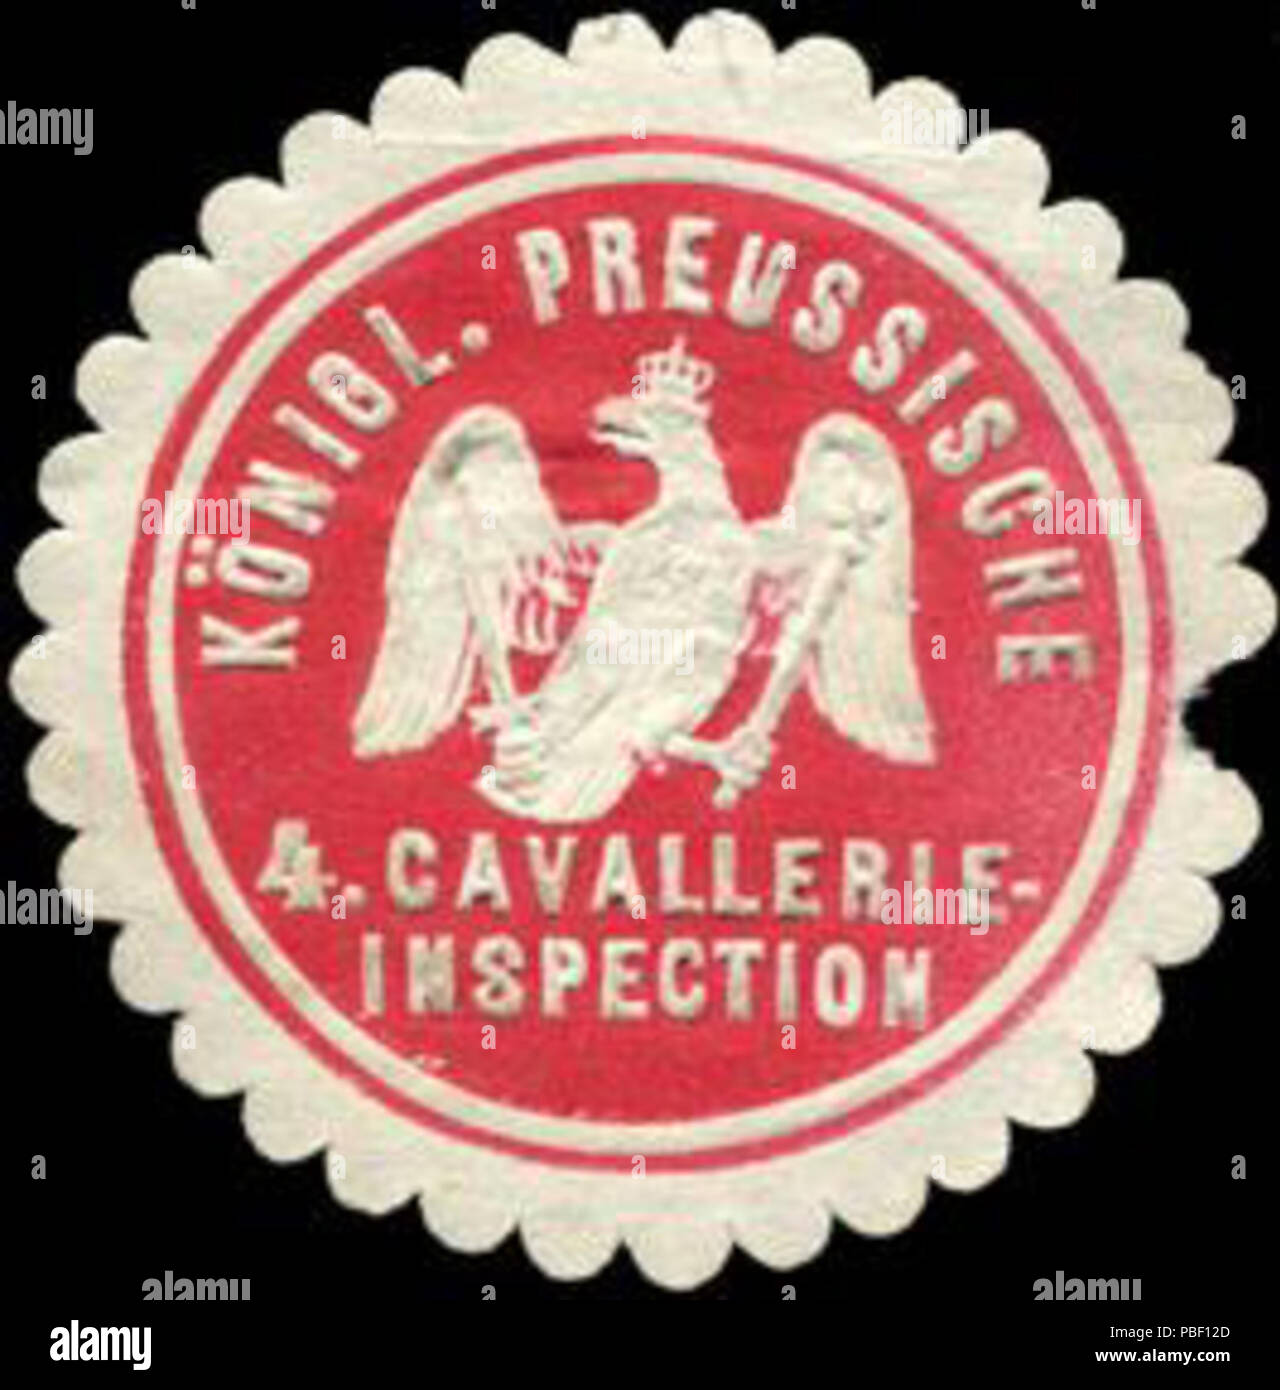 Alte Briefverschlussmarke aus Papier, welche seit ca. 1850 von Behoerden, Anwaelten, Notaren und Firmen zum verschliessen der Post verwendet wurde. 1451 Siegelmarke Königlich Preussische 4. Cavallerie - Inspection W0214700 Stock Photo